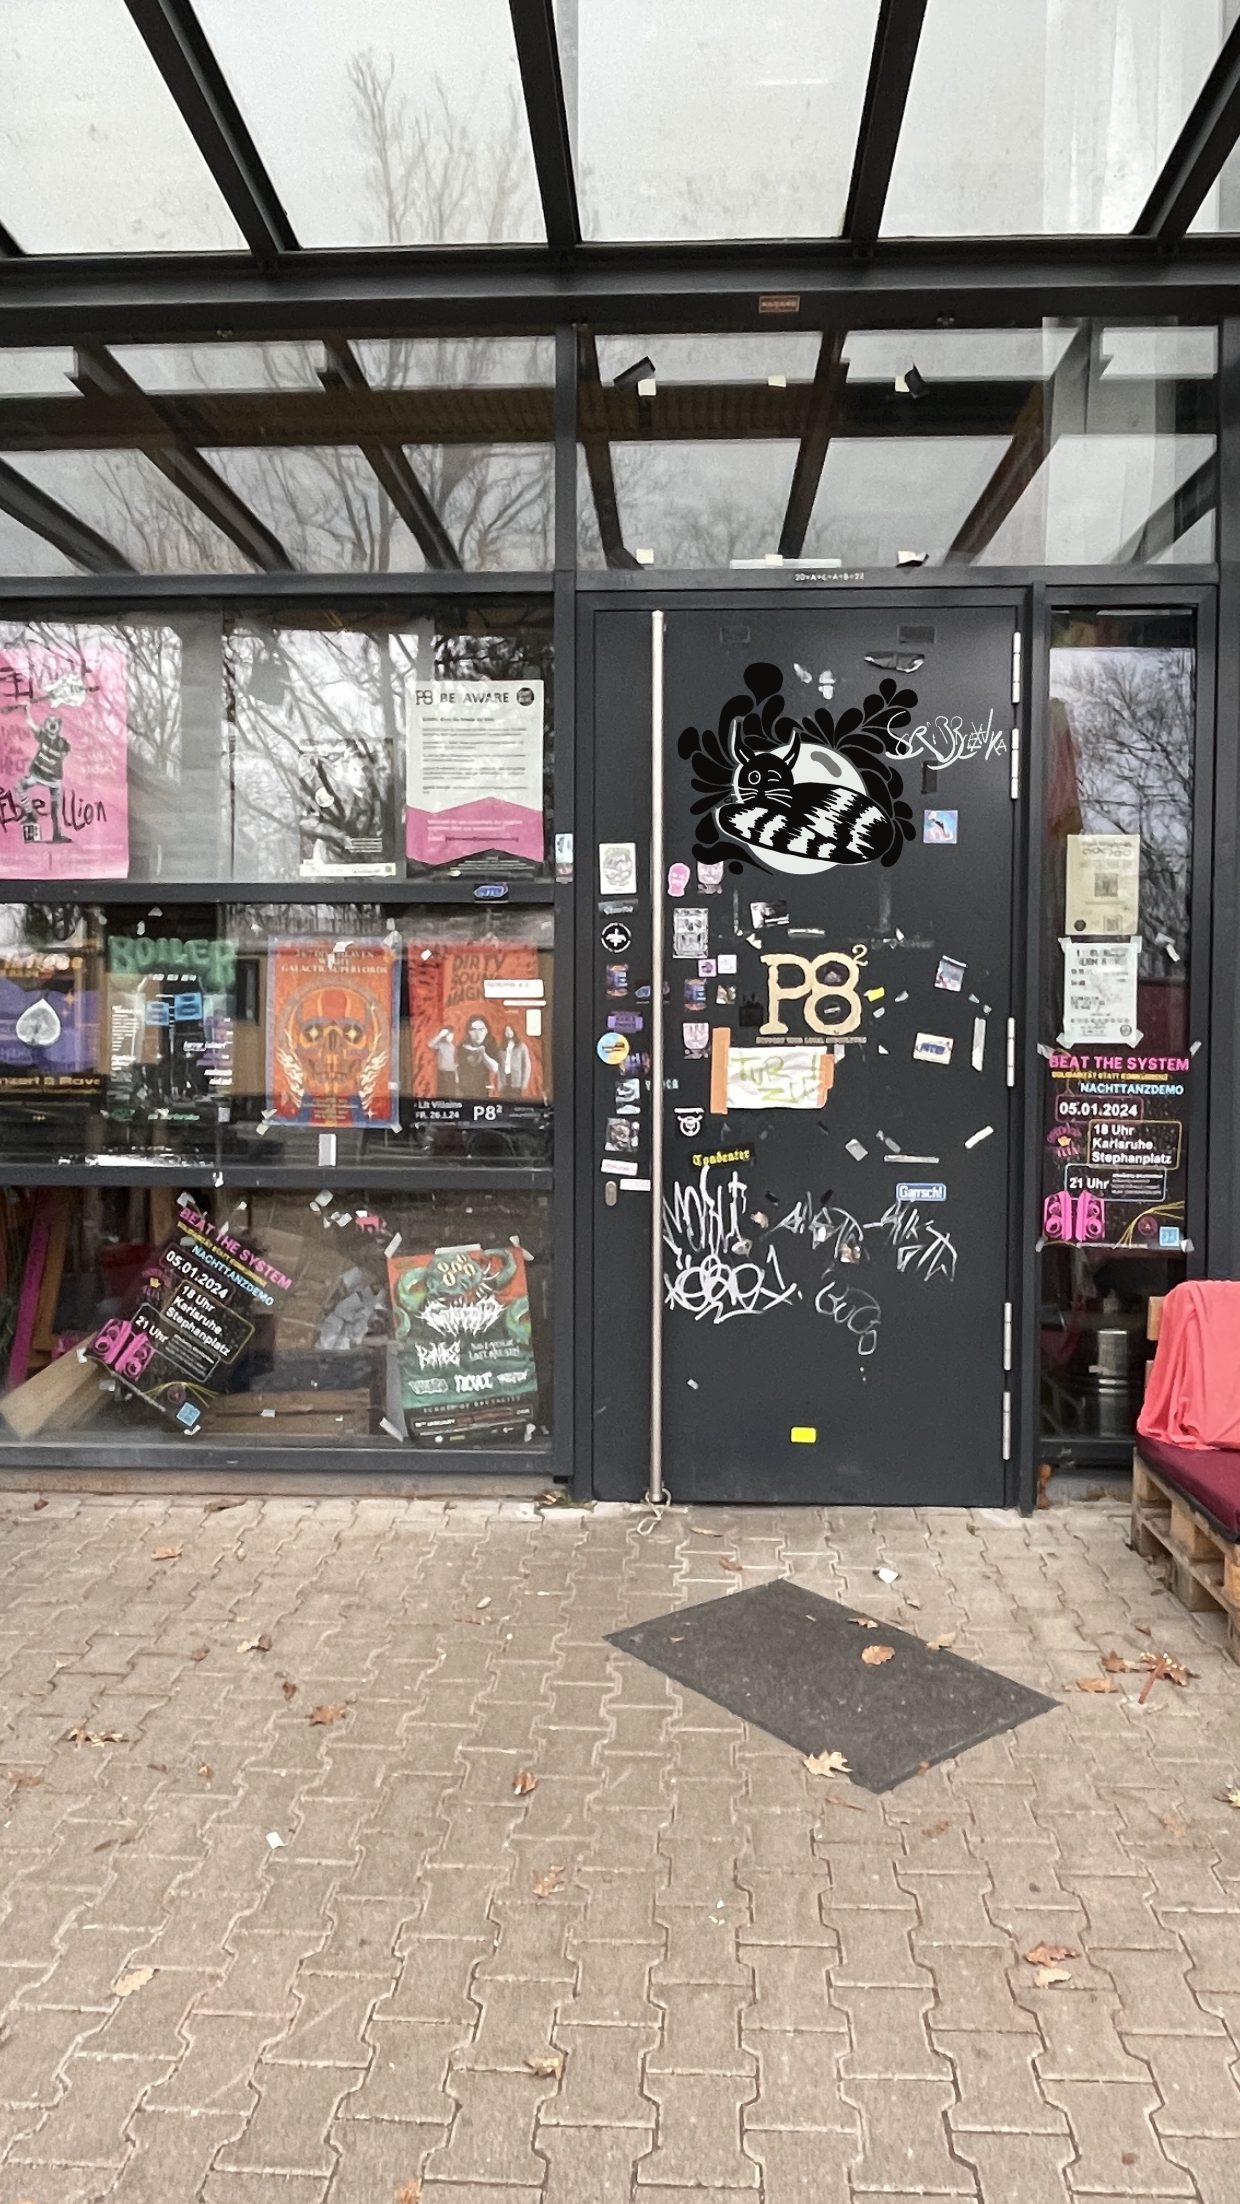 Die Tür des Kulturzentrums P8 in der Schauenburgstraße. Es zeigt verschiedene Graffitis. Unter anderem eine zwinkernde schwarzweiße Katze.